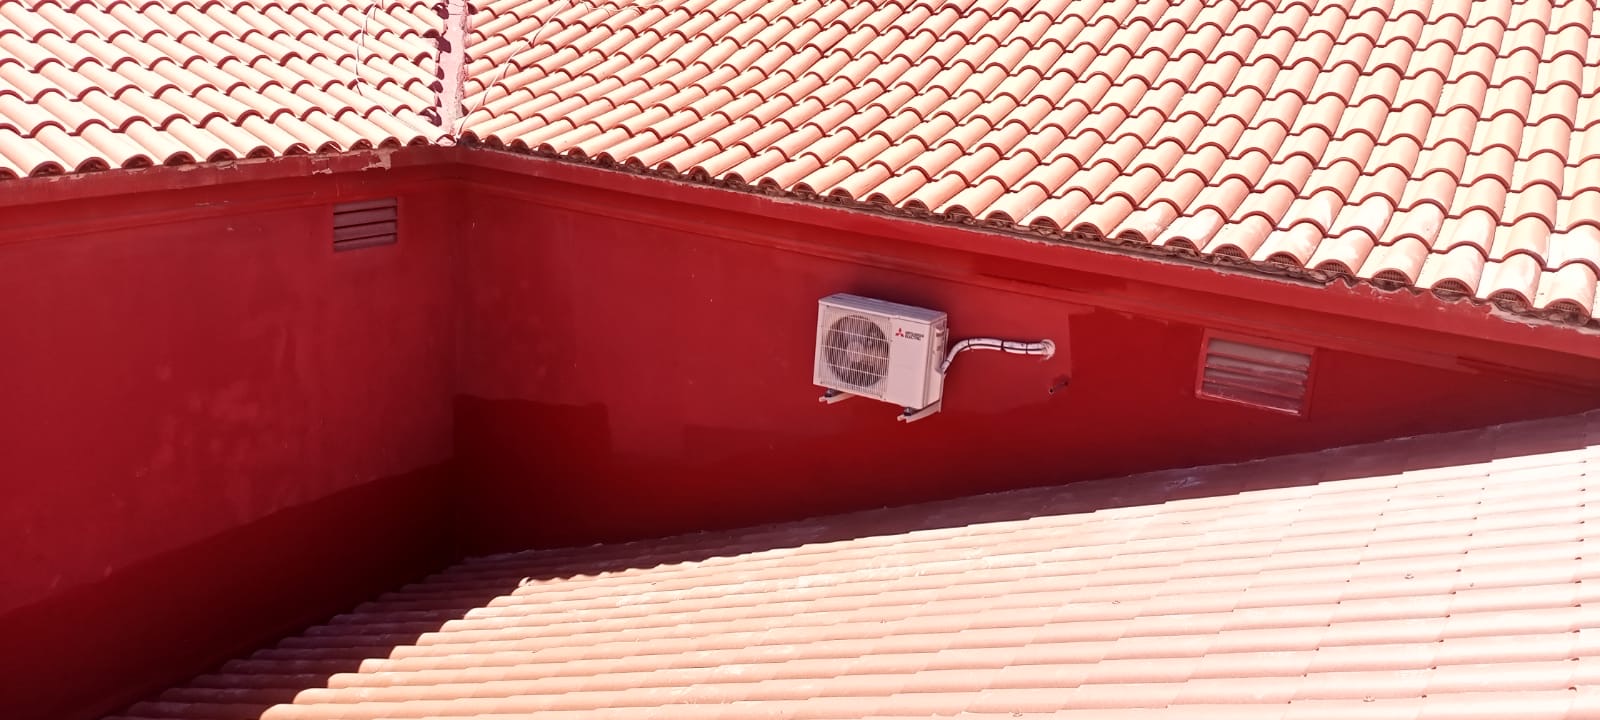 Imagen de un tejado de tejas rojas con una unidad de aire acondicionado montada en una pared rojo intenso, mostrando la integración de sistemas modernos en edificaciones con técnicas de rehabilitación tradicionales. La combinación del color de la pared y las tejas crea una estética armoniosa y funcional.